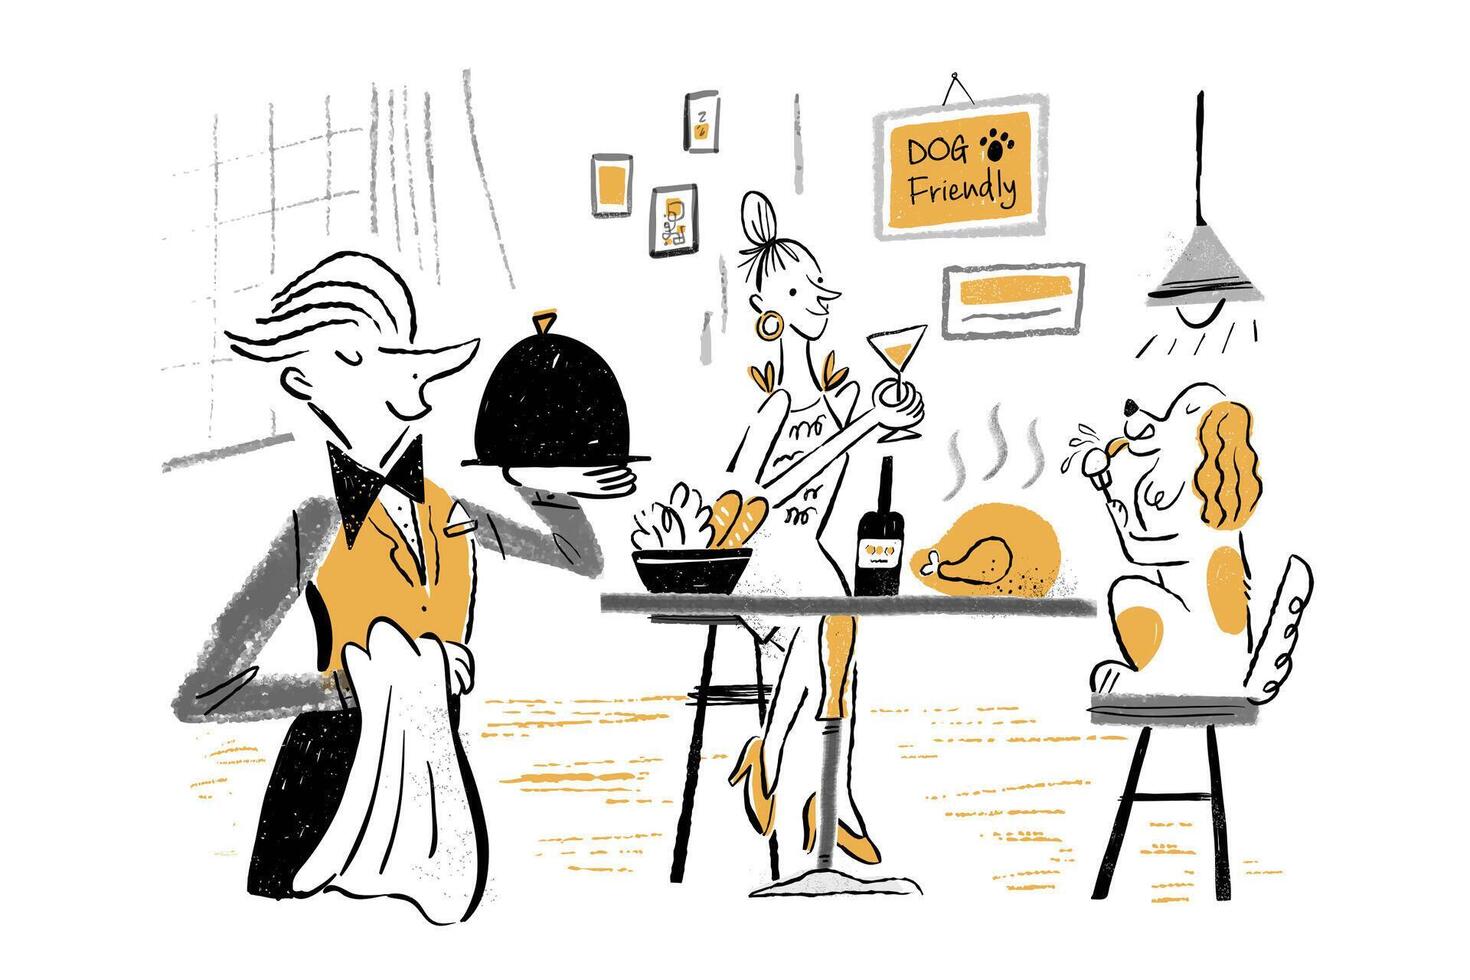 mão desenhado rabisco estilo ilustração do aceita animais de estimação restaurante. garçom servindo Comida com mulher e dela animal cachorro sentado às mesa para apreciar grande refeição. vetor